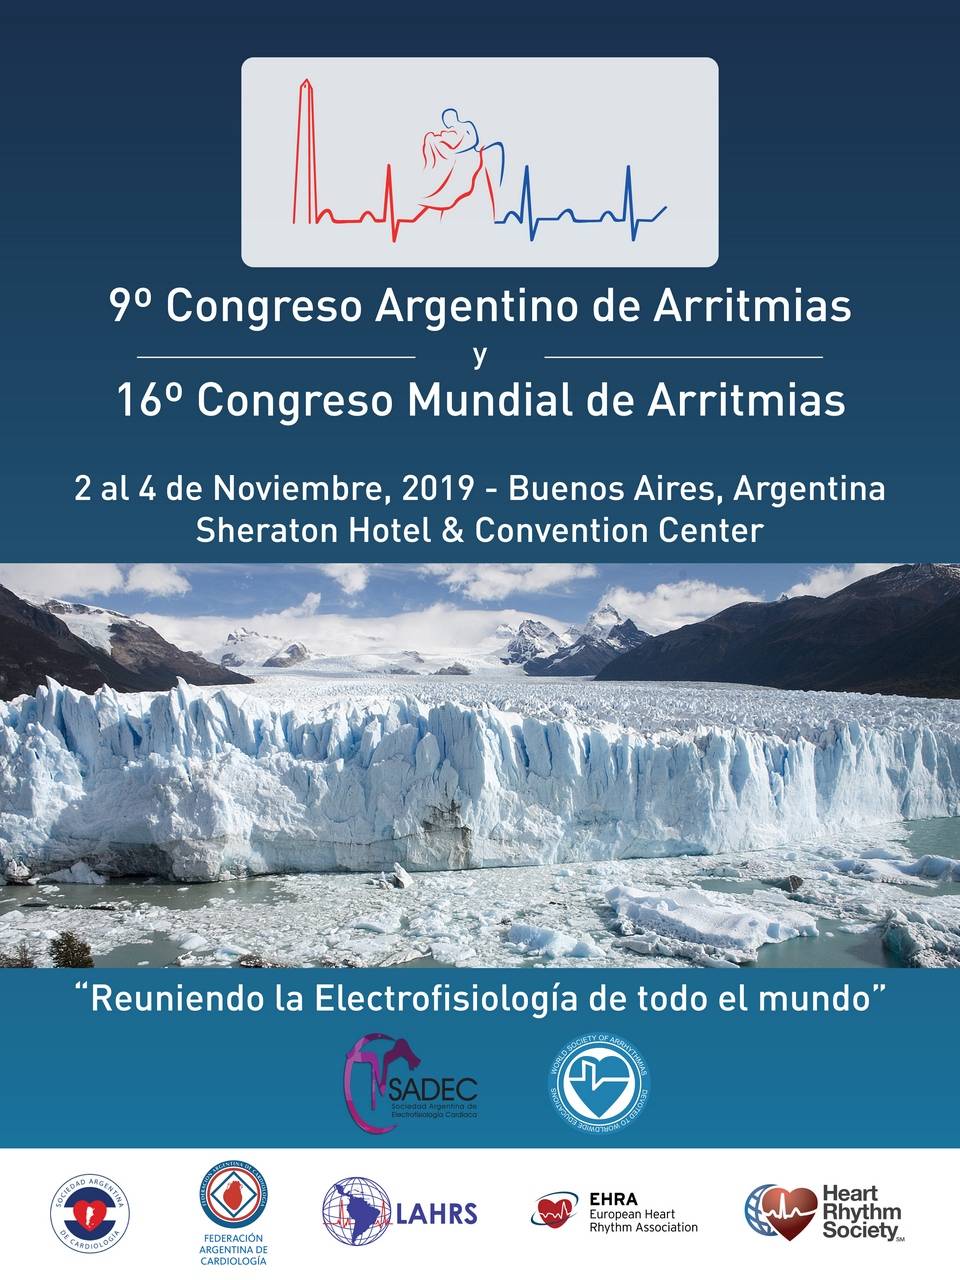 9no Congreso Argentino de Arritmias y 16 Congreso Mundial de Arritmias